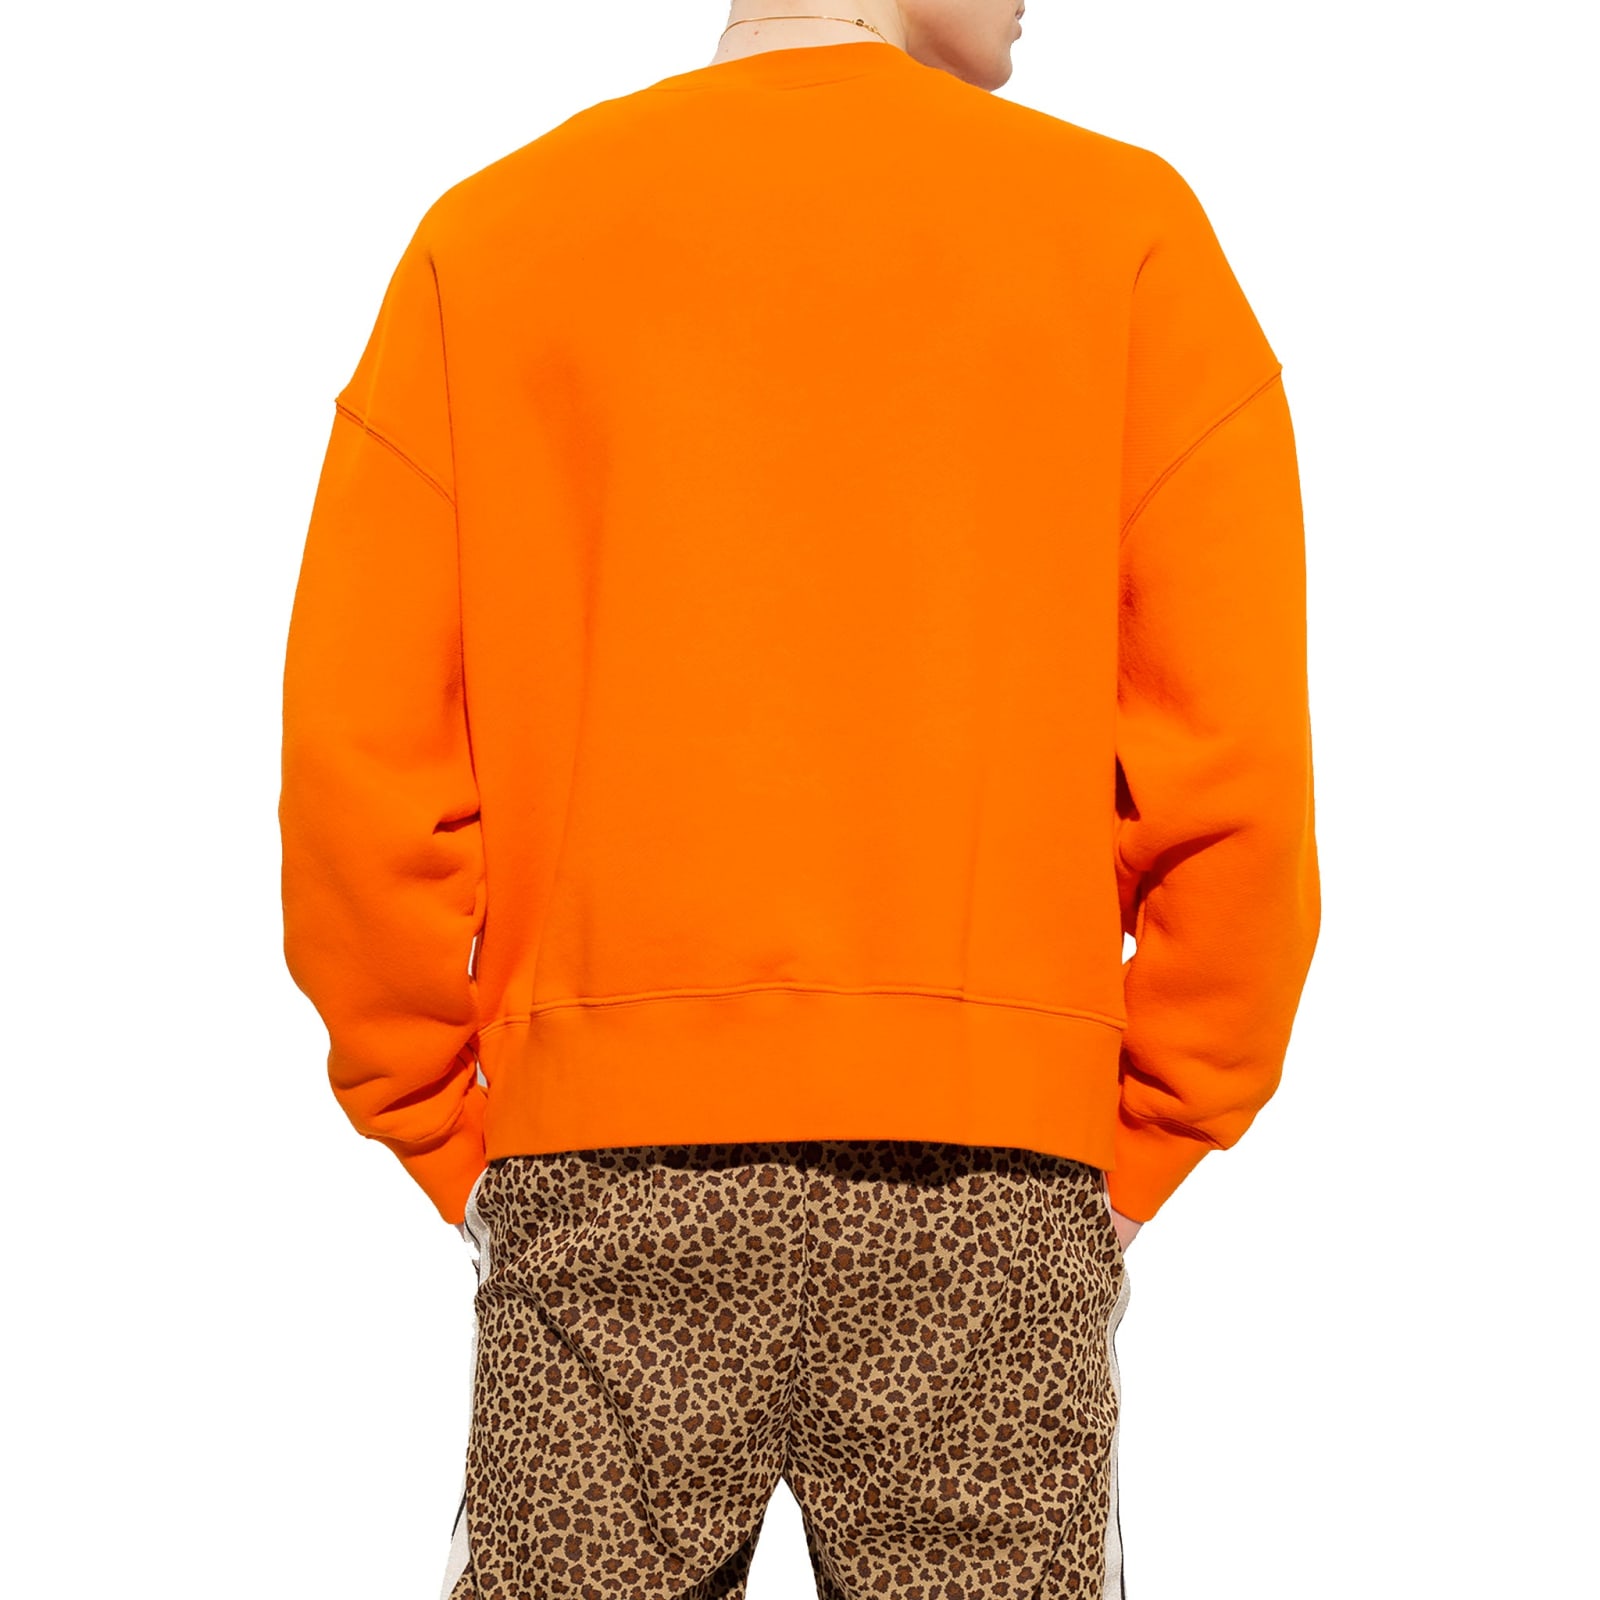 Shop Palm Angels Cotton Logo Sweatshirt In Orange